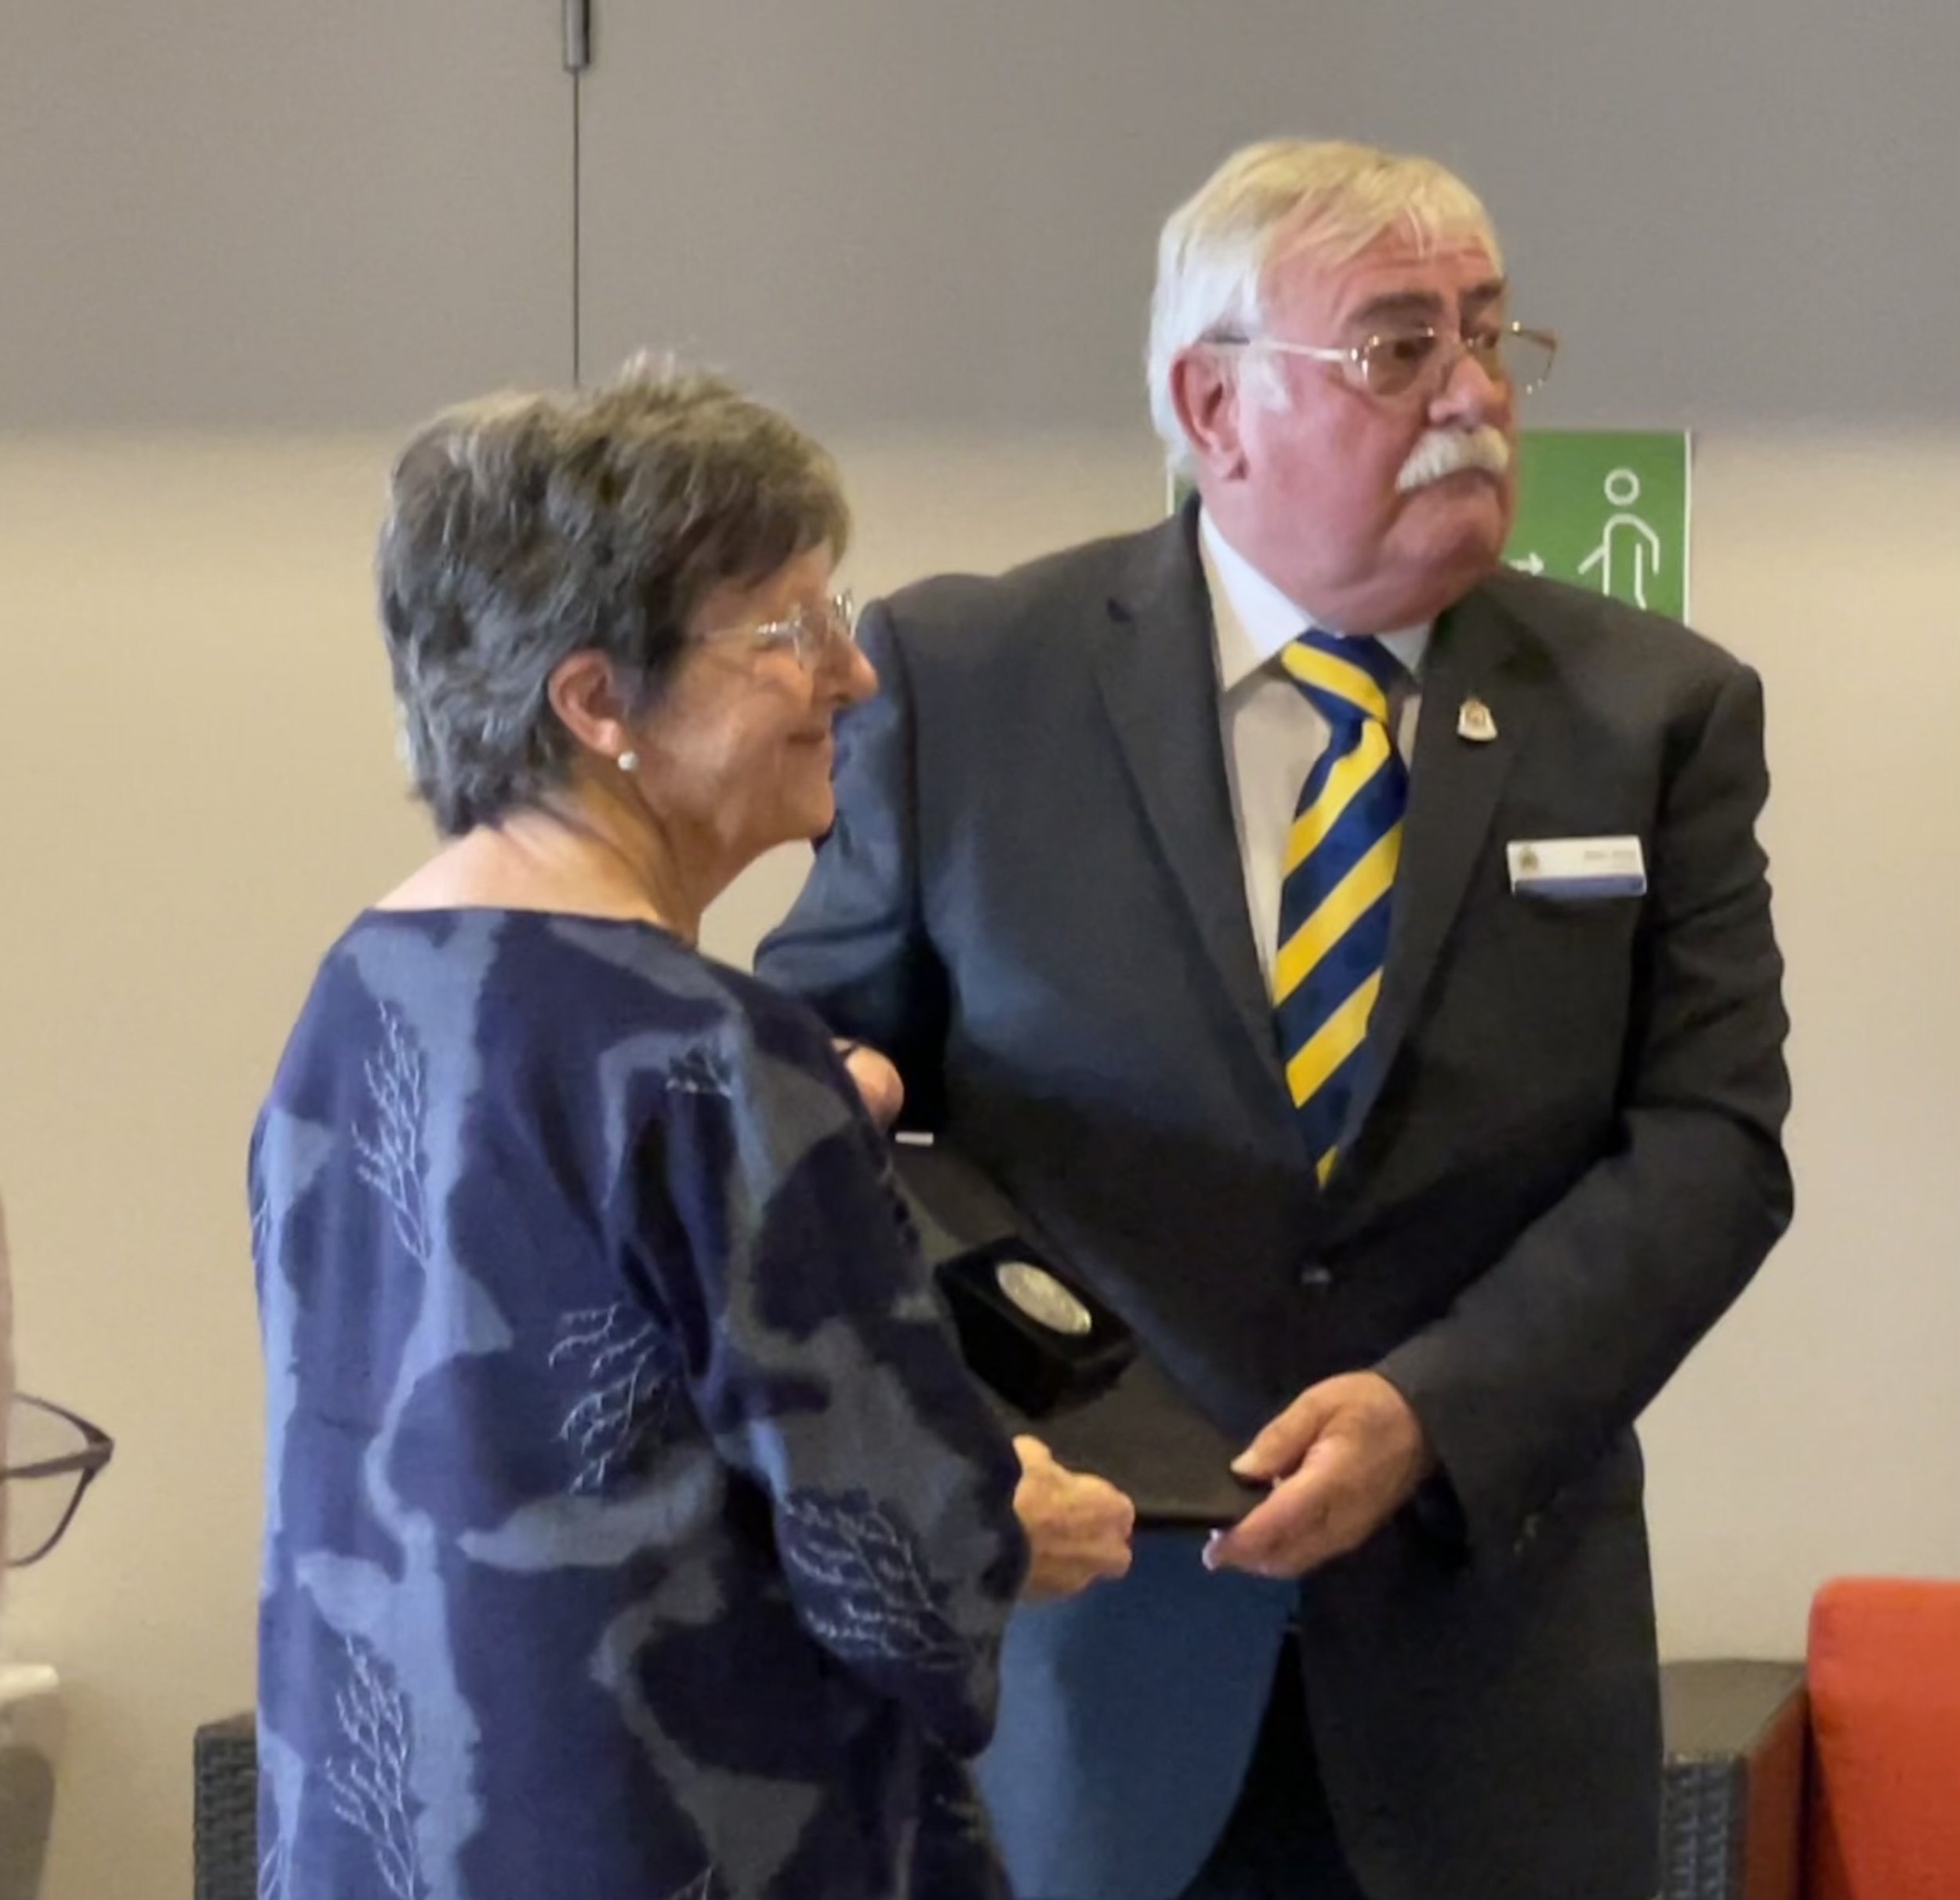 2022_02_13 Margaret Flett Secretary RSL Belconnen Sub Branch Secretary receiving Award from John King RSL ACT Branch President Australia Day 2022.jpg